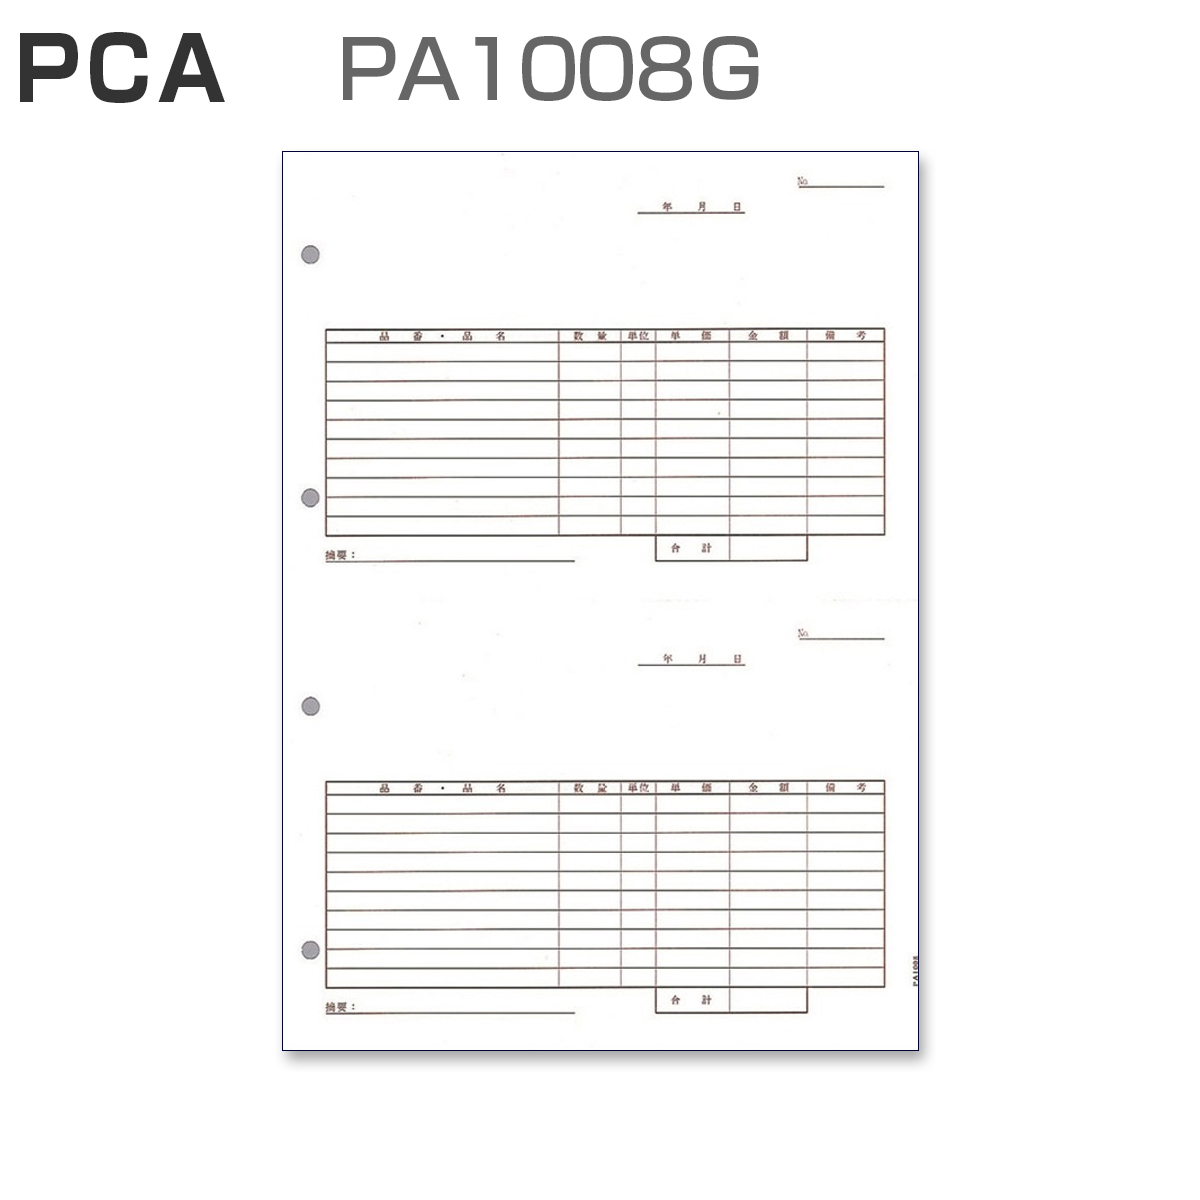 PCA PA1008G 汎用伝票 【2面式】 (500枚)